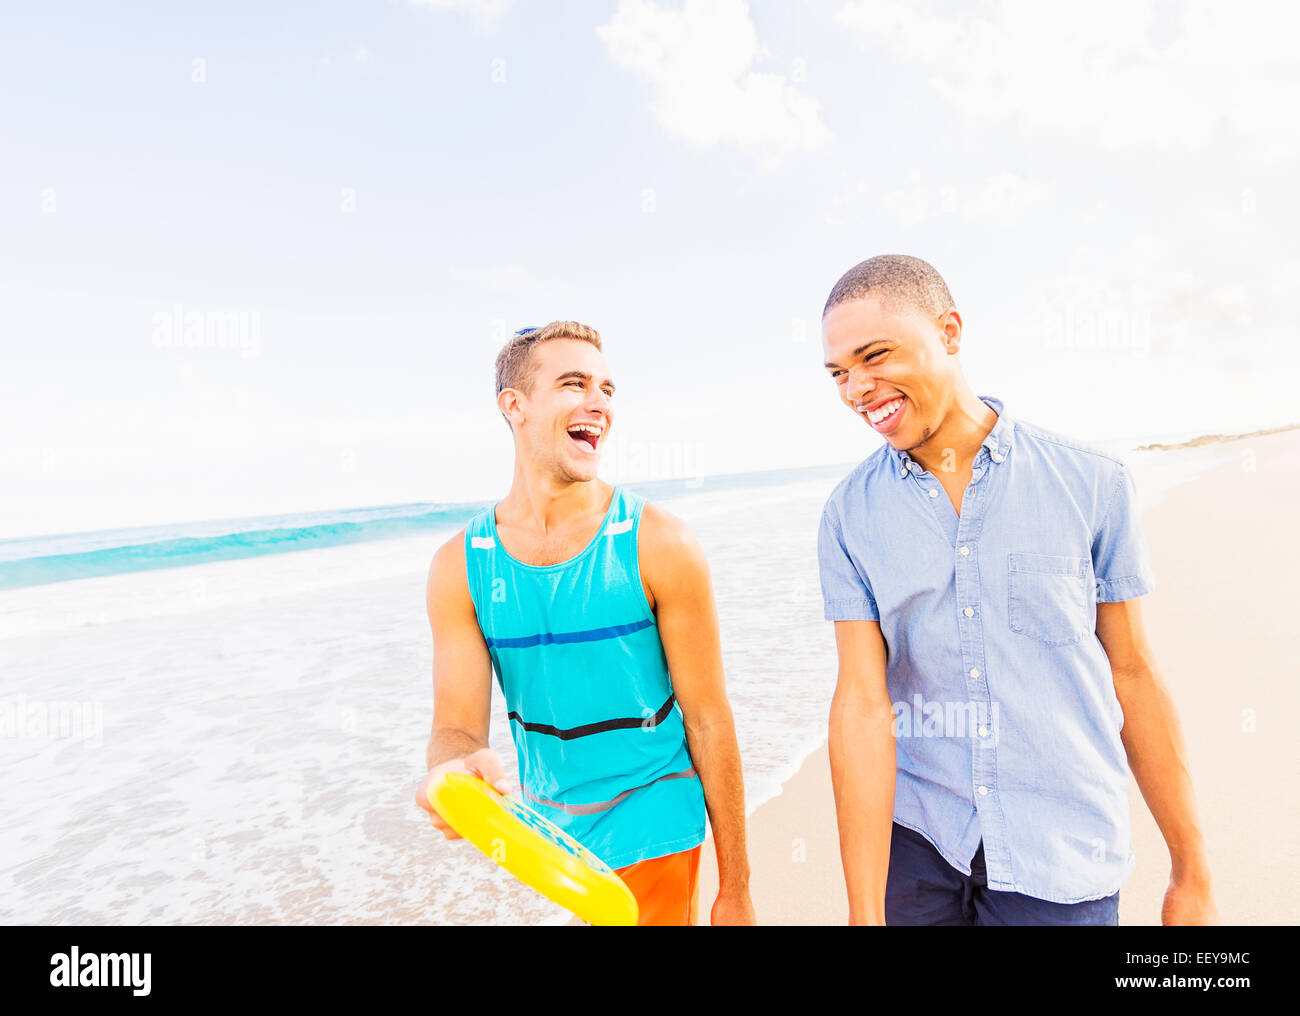 USA, Florida, Jupiter, junger Mann gehen und sprechen, mit Kunststoff-Scheibe am Strand Stockfoto